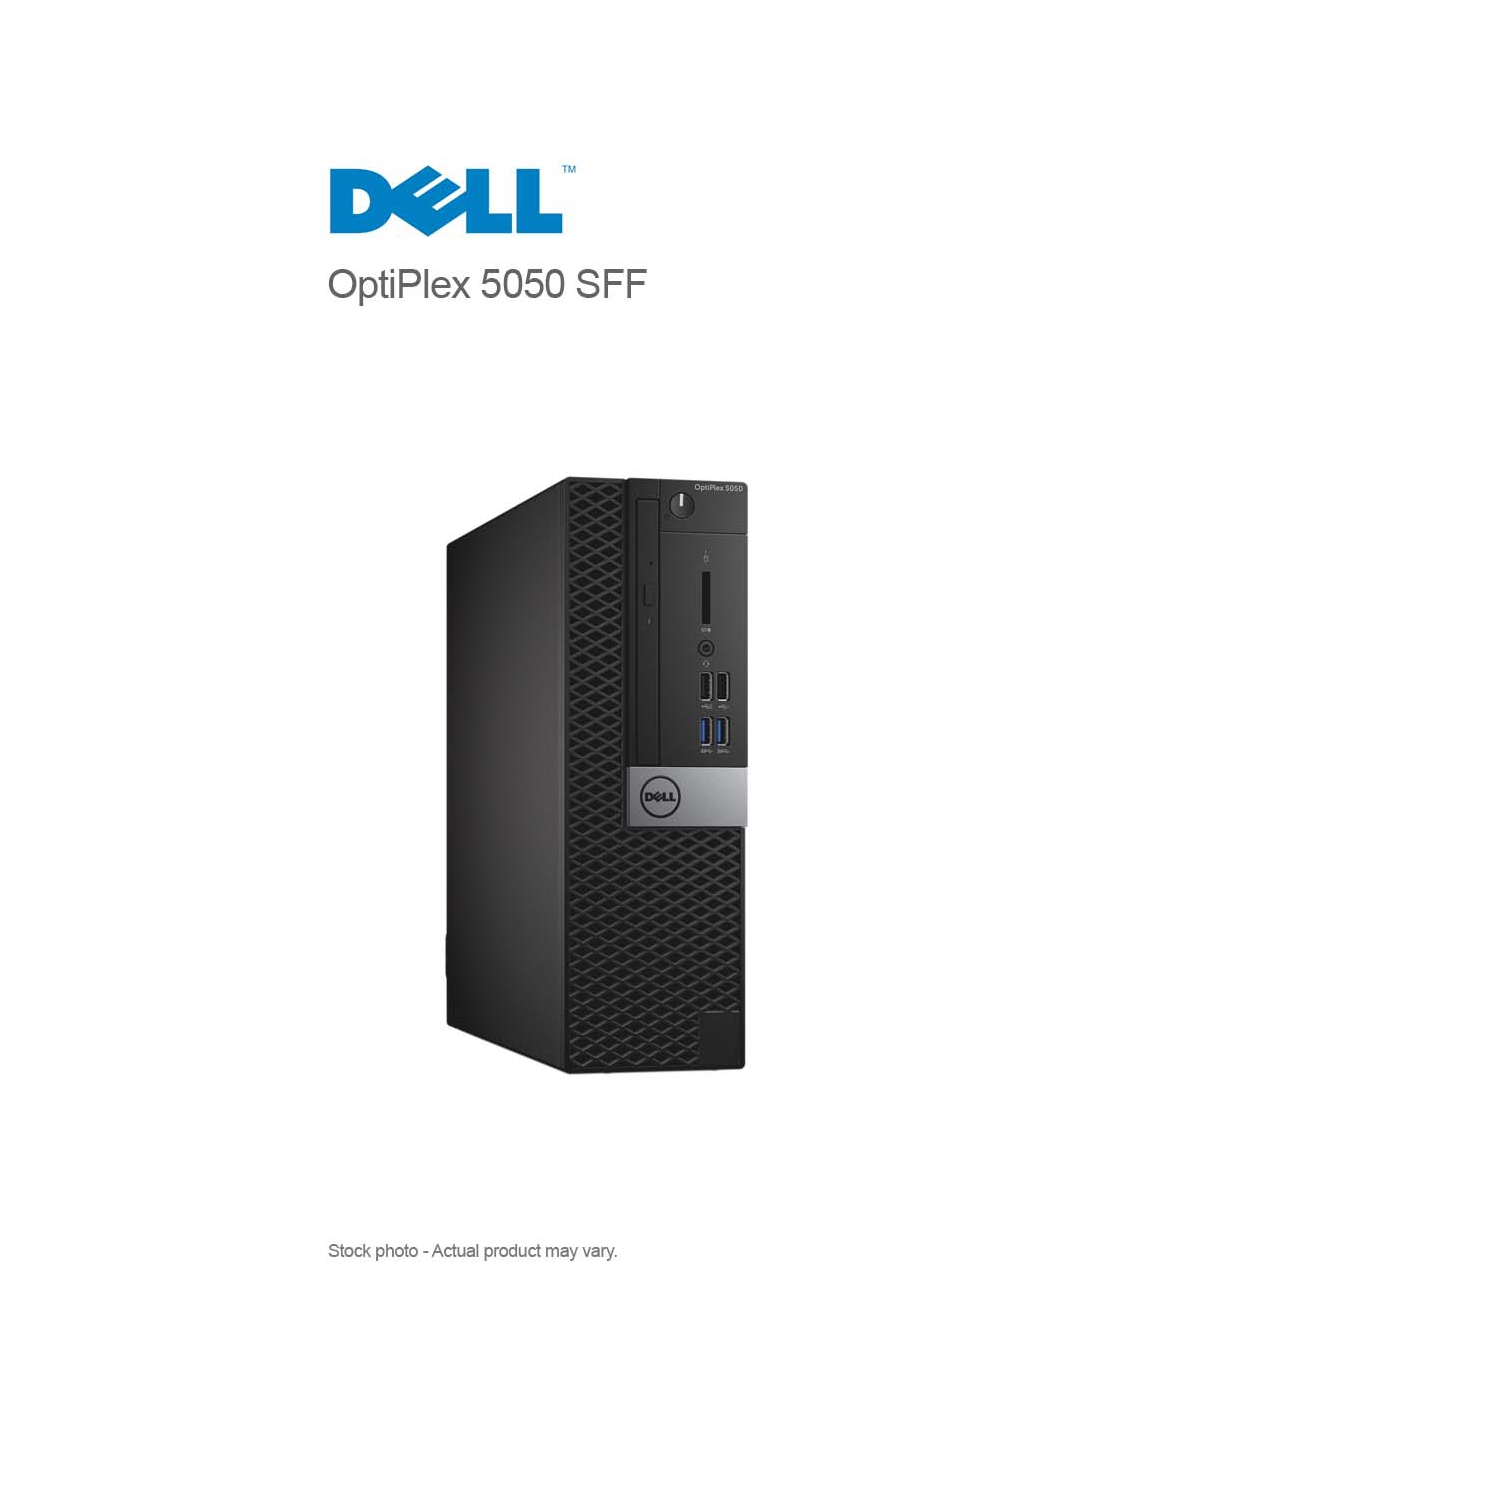 Dell OptiPlex 5050 SFF Core i7-7700 3.60GHz, 32GB, 1 TB M.2 NVMe, DVDRW, WIN 10 PRO - Refurbished (Excellent)